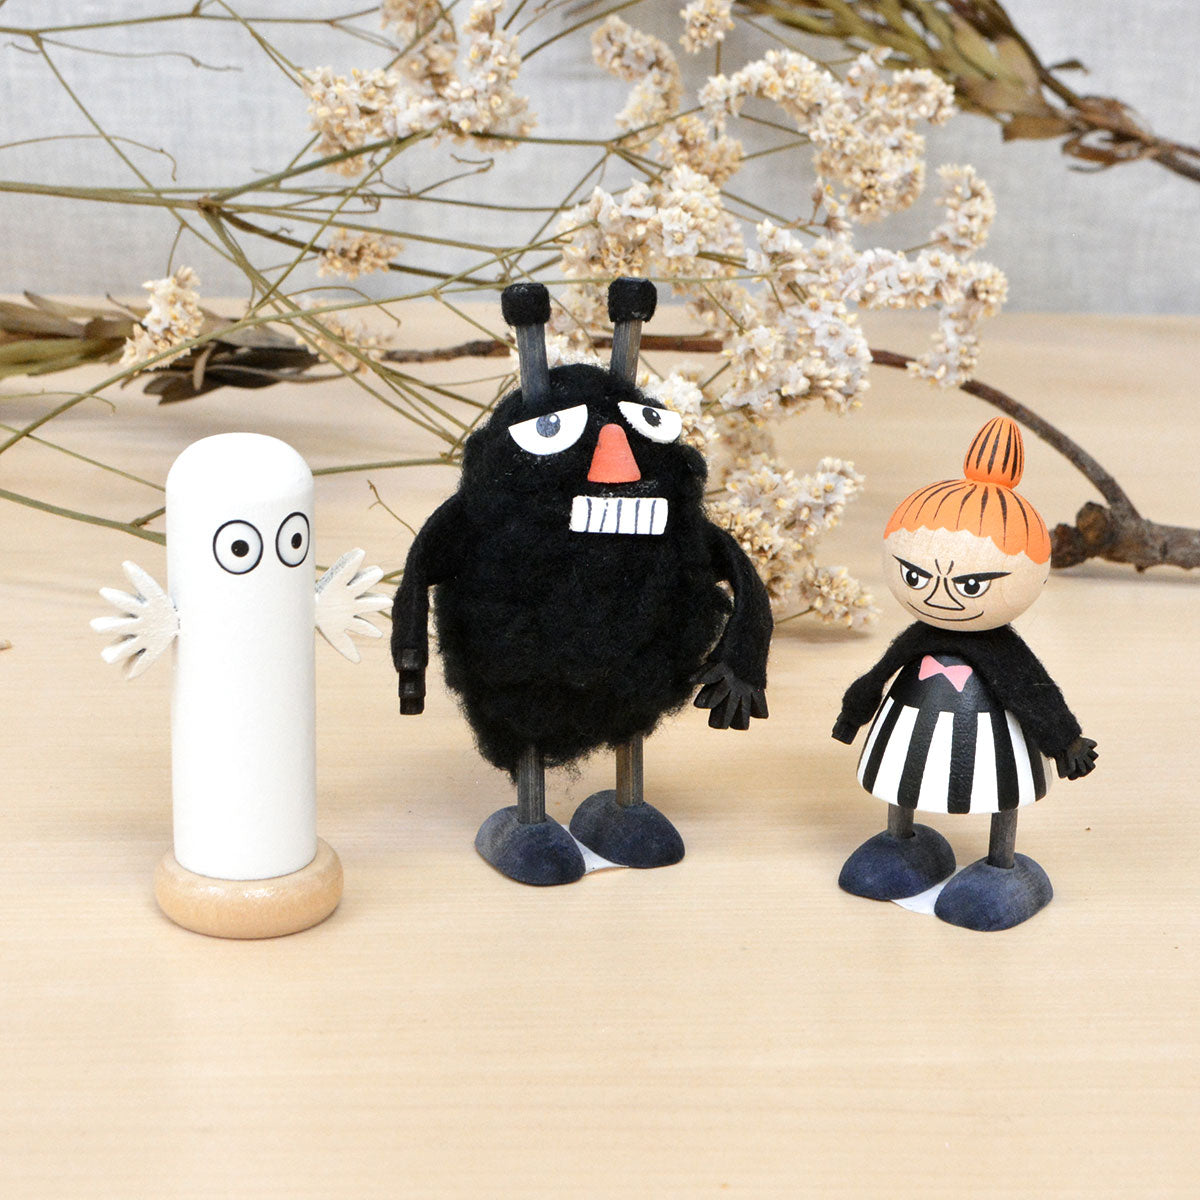 Moomin ムーミン Puulelut プーレルット 木製手描き人形 ( スティンキー )